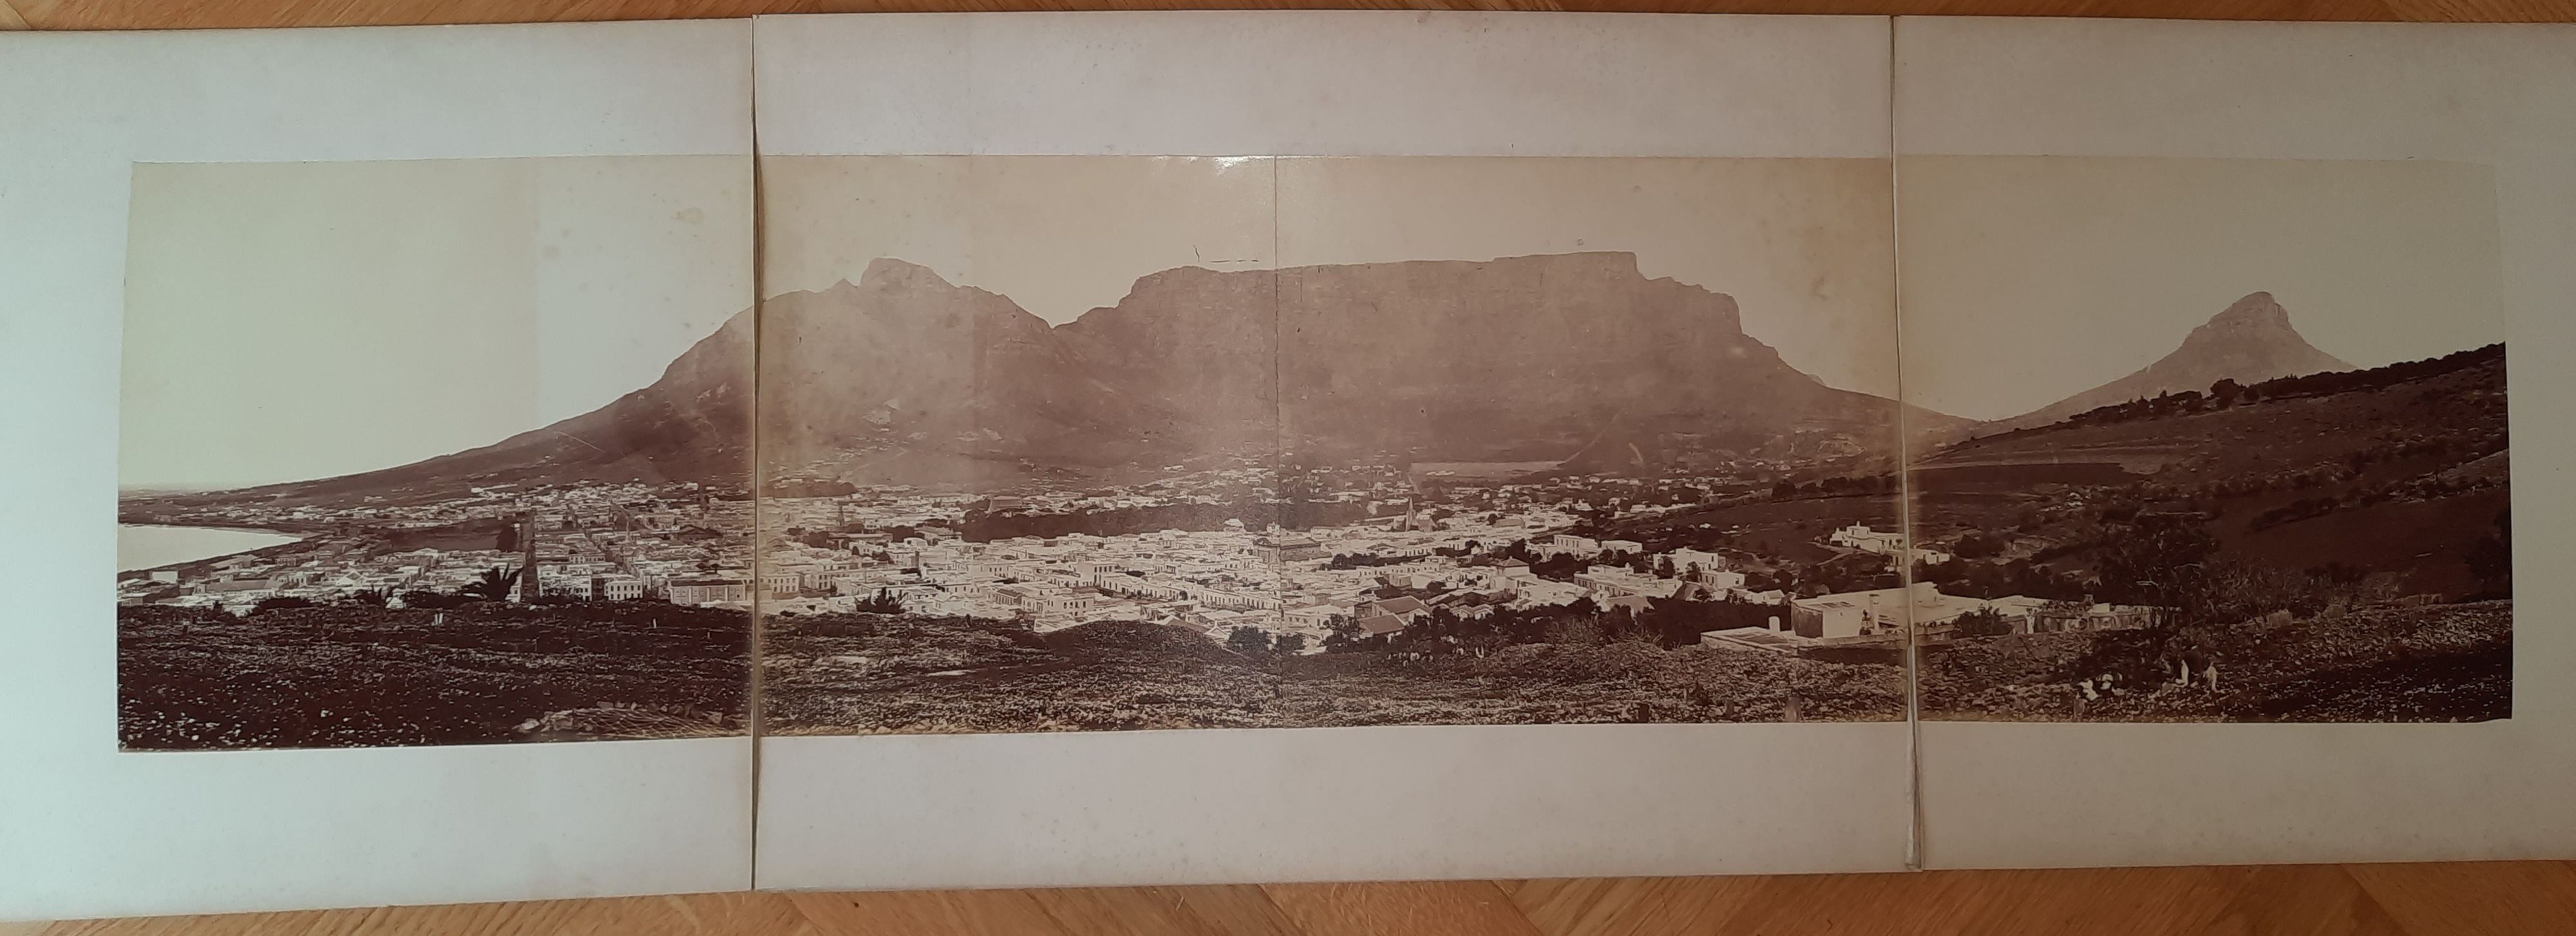  - Panoramaansicht von Kapstadt von einem Hgel aus, im Hintergrund der Tafelberg..